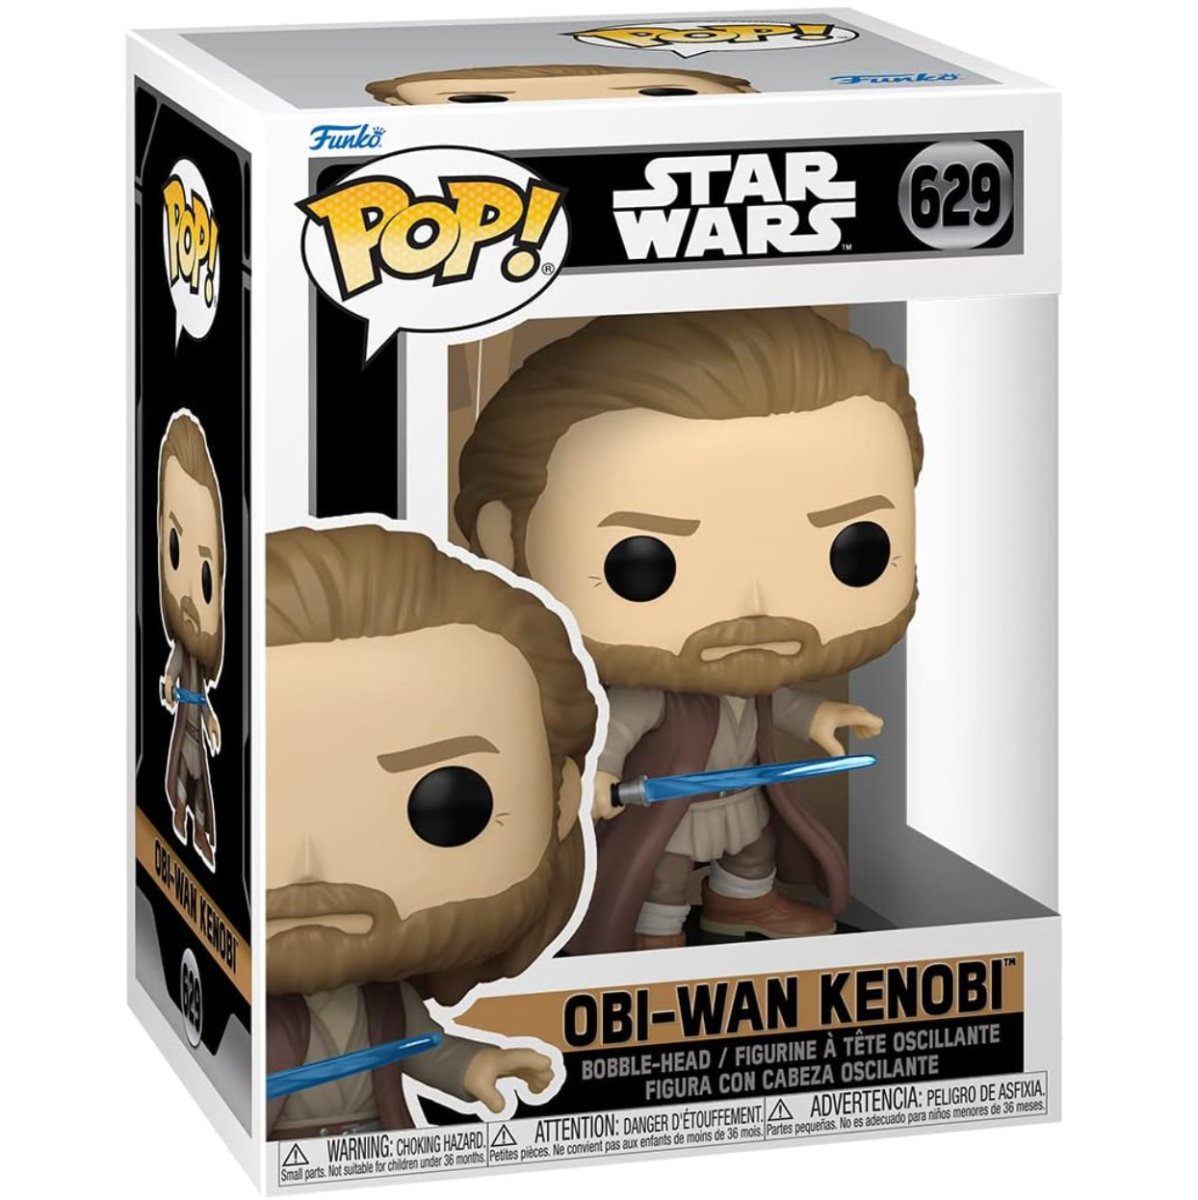 Star Wars - Obi-Wan Kenobi #629 - Funko Pop! Vinyl Star Wars - Persona Toys